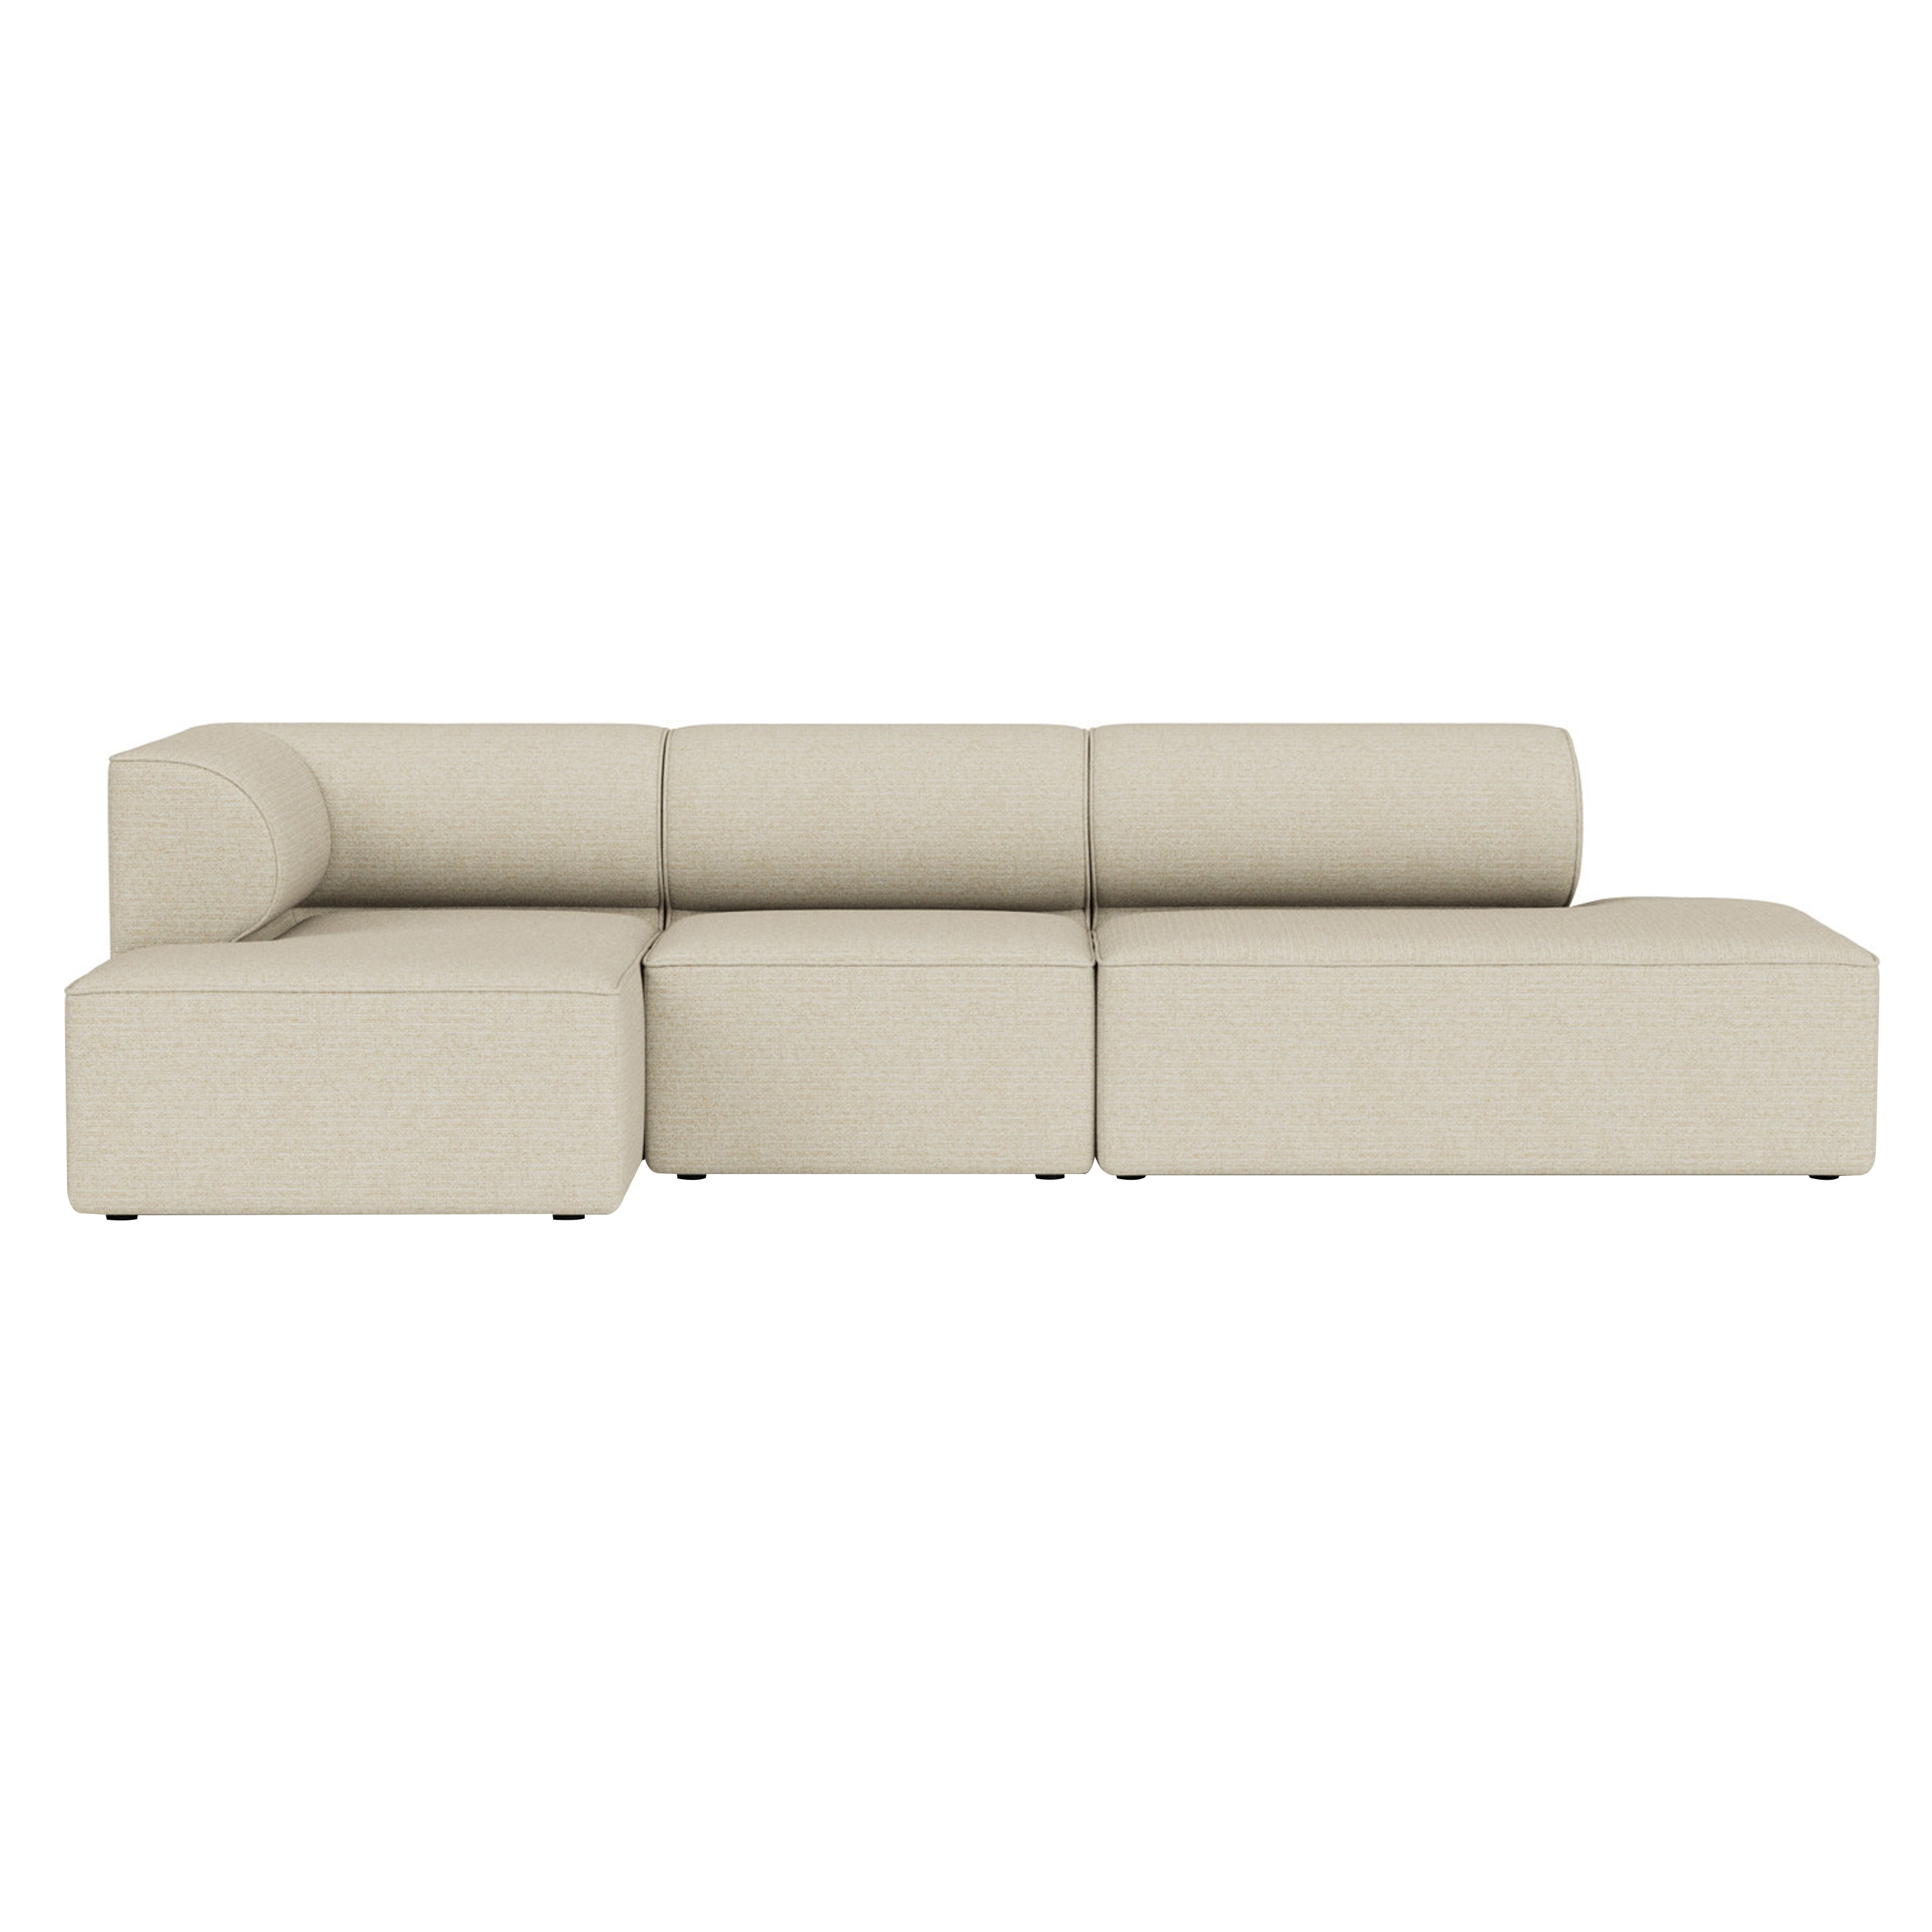 Eave 3 Seater Sofa: Small + Configuration 10 + Savanna 202